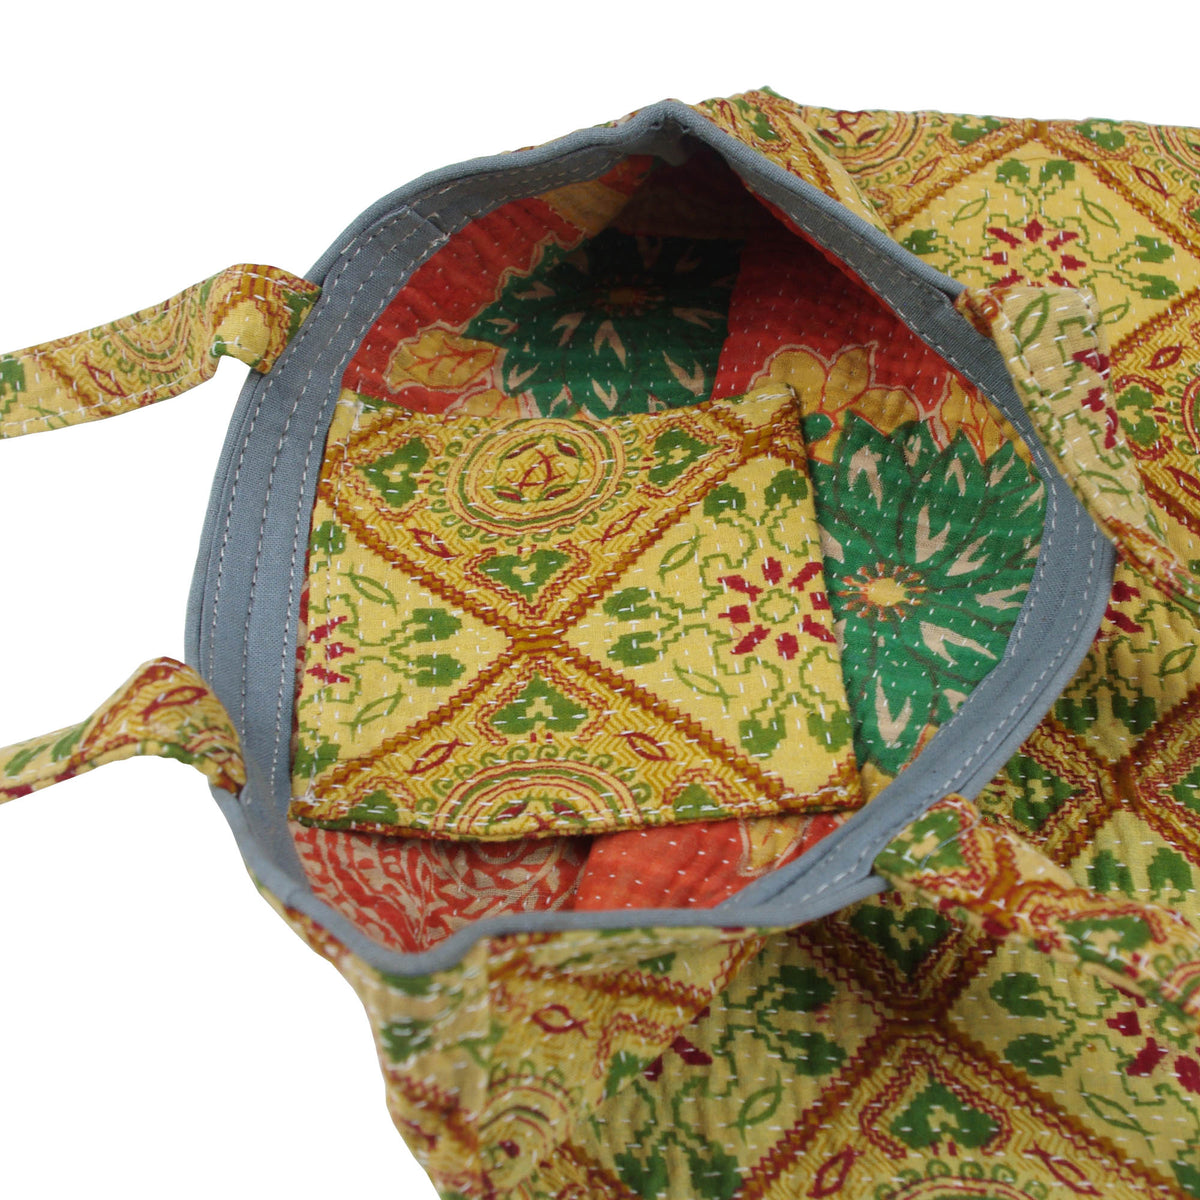 Vintage Fine Kantha Stitched Cotton Tote Bag- Sand Brown